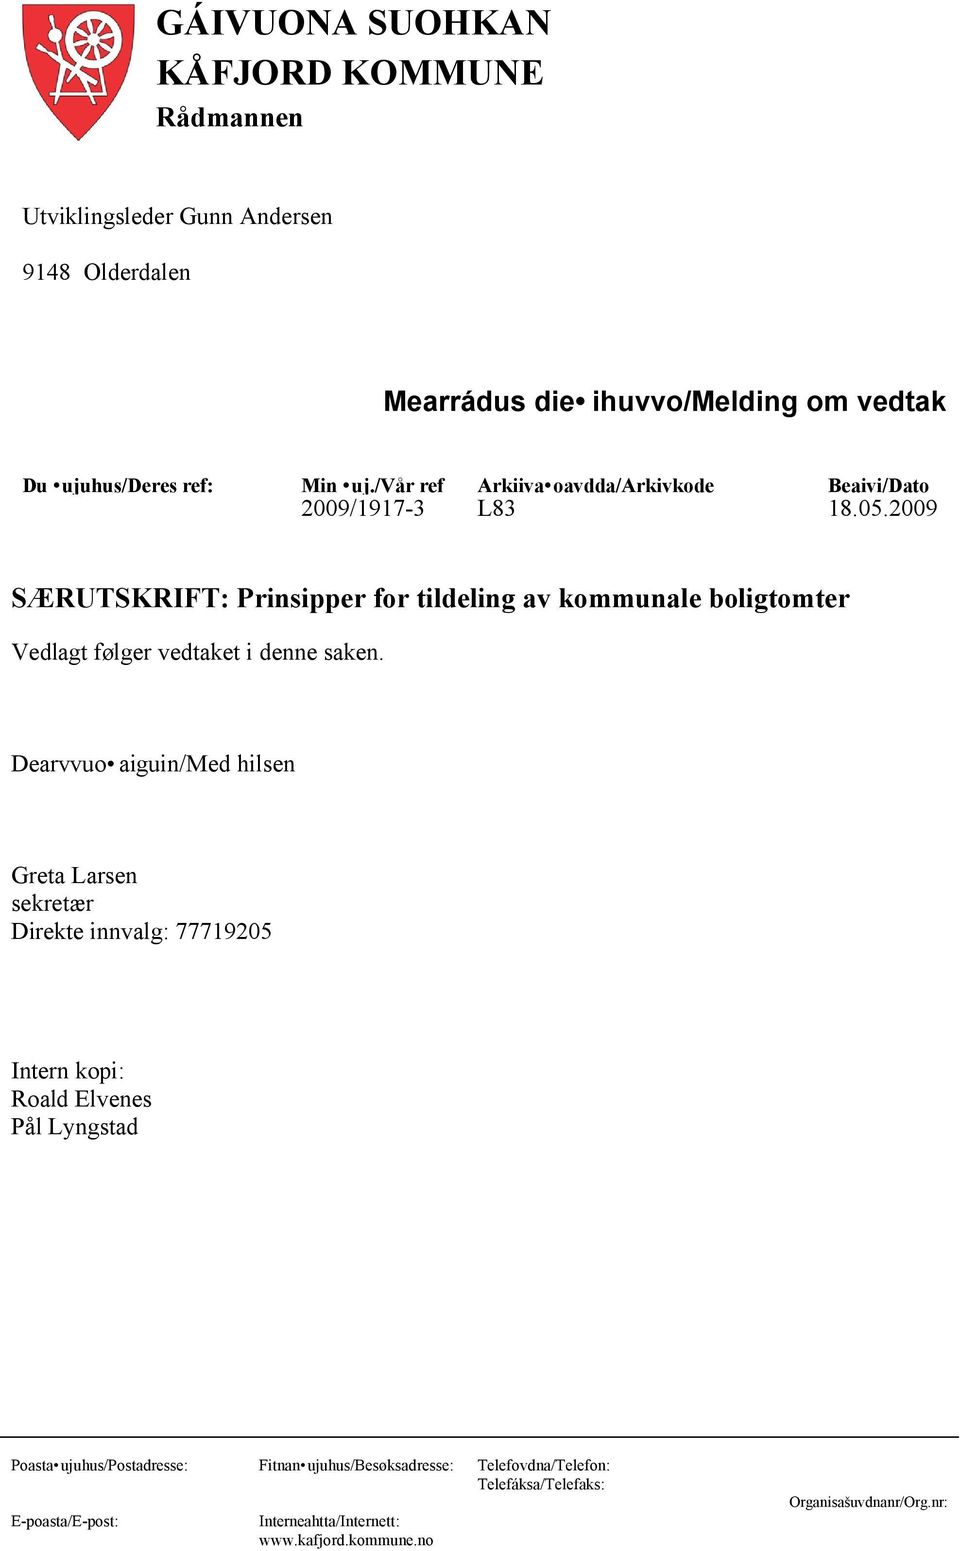 2009 SÆRUTSKRIFT: Prinsipper for tildeling av kommunale boligtomter Vedlagt følger vedtaket i denne saken.